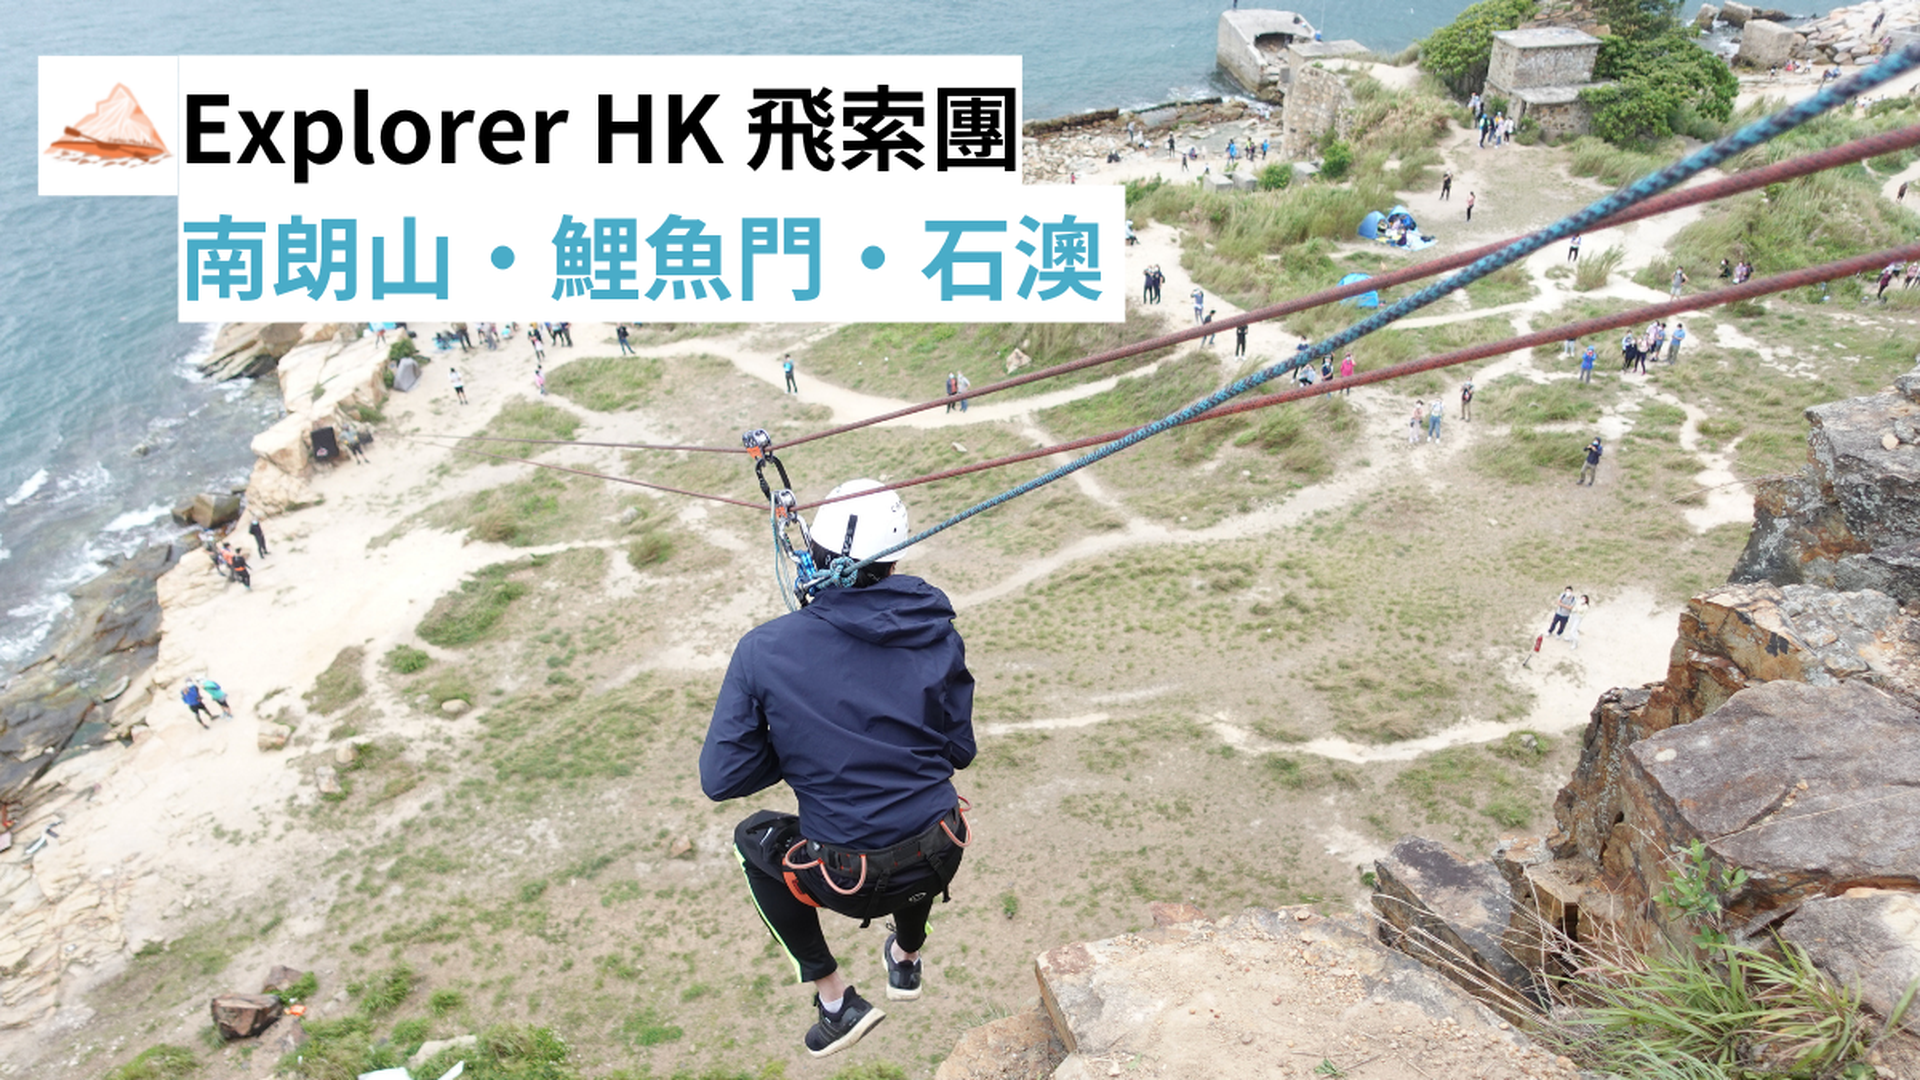 Explorer HK 飛索團 (石澳 )